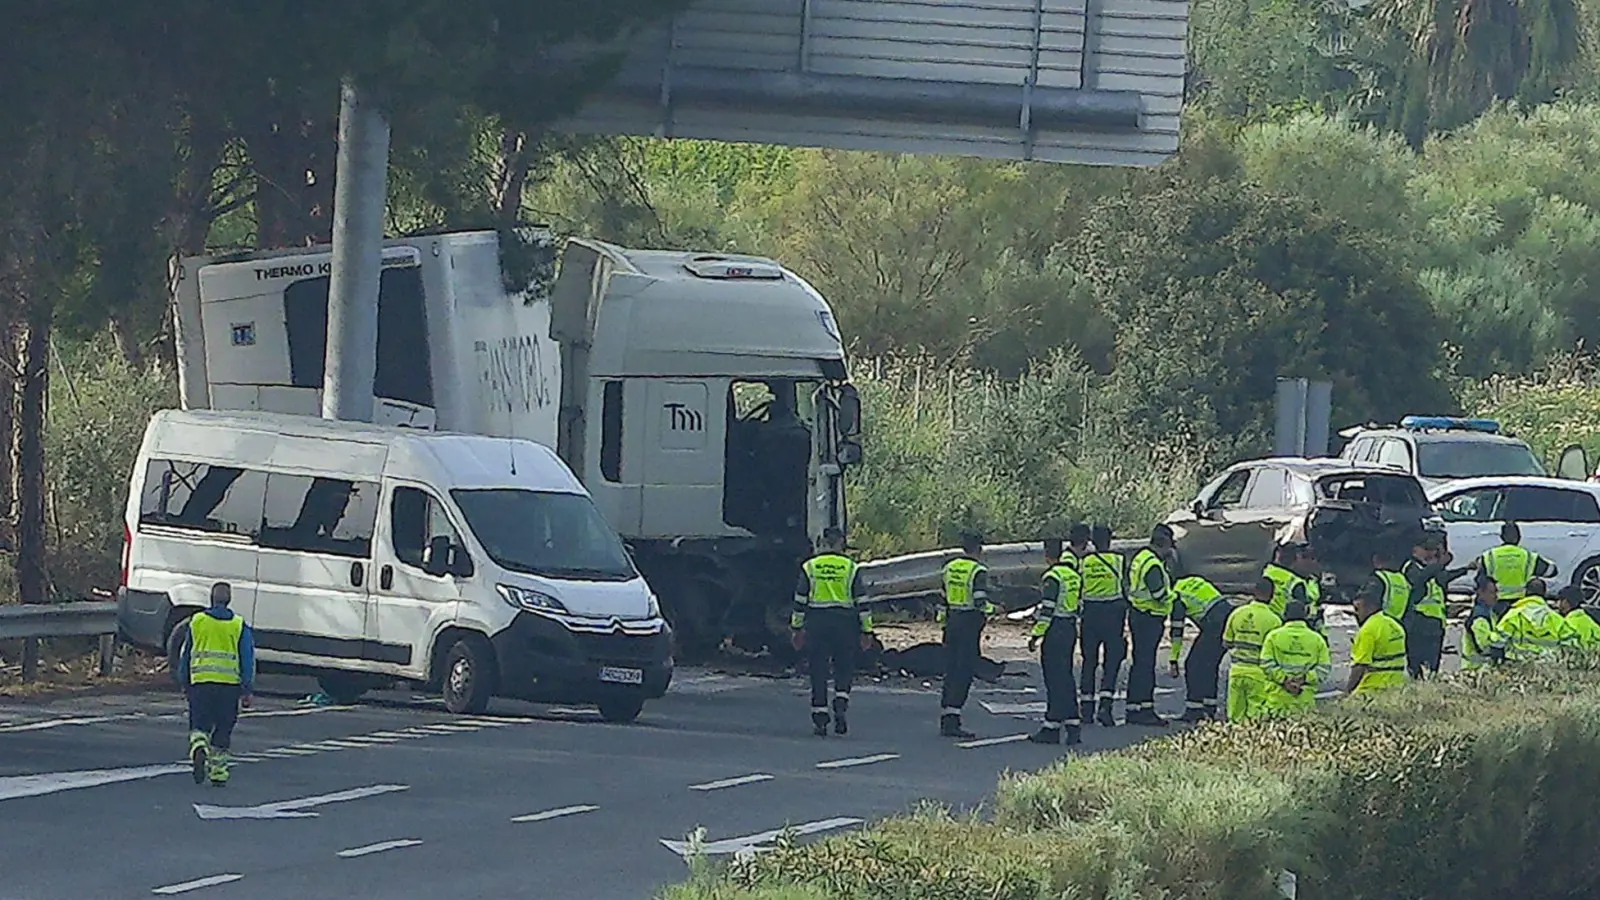 Rettungskräfte an der Unfallstelle an der Autobahn AP-4 unweit von Sevilla im Süden des Landes: Ein LKW erfasste mehrere Menschen. (Foto: Francisco J. Olmo/Europapress/dpa)